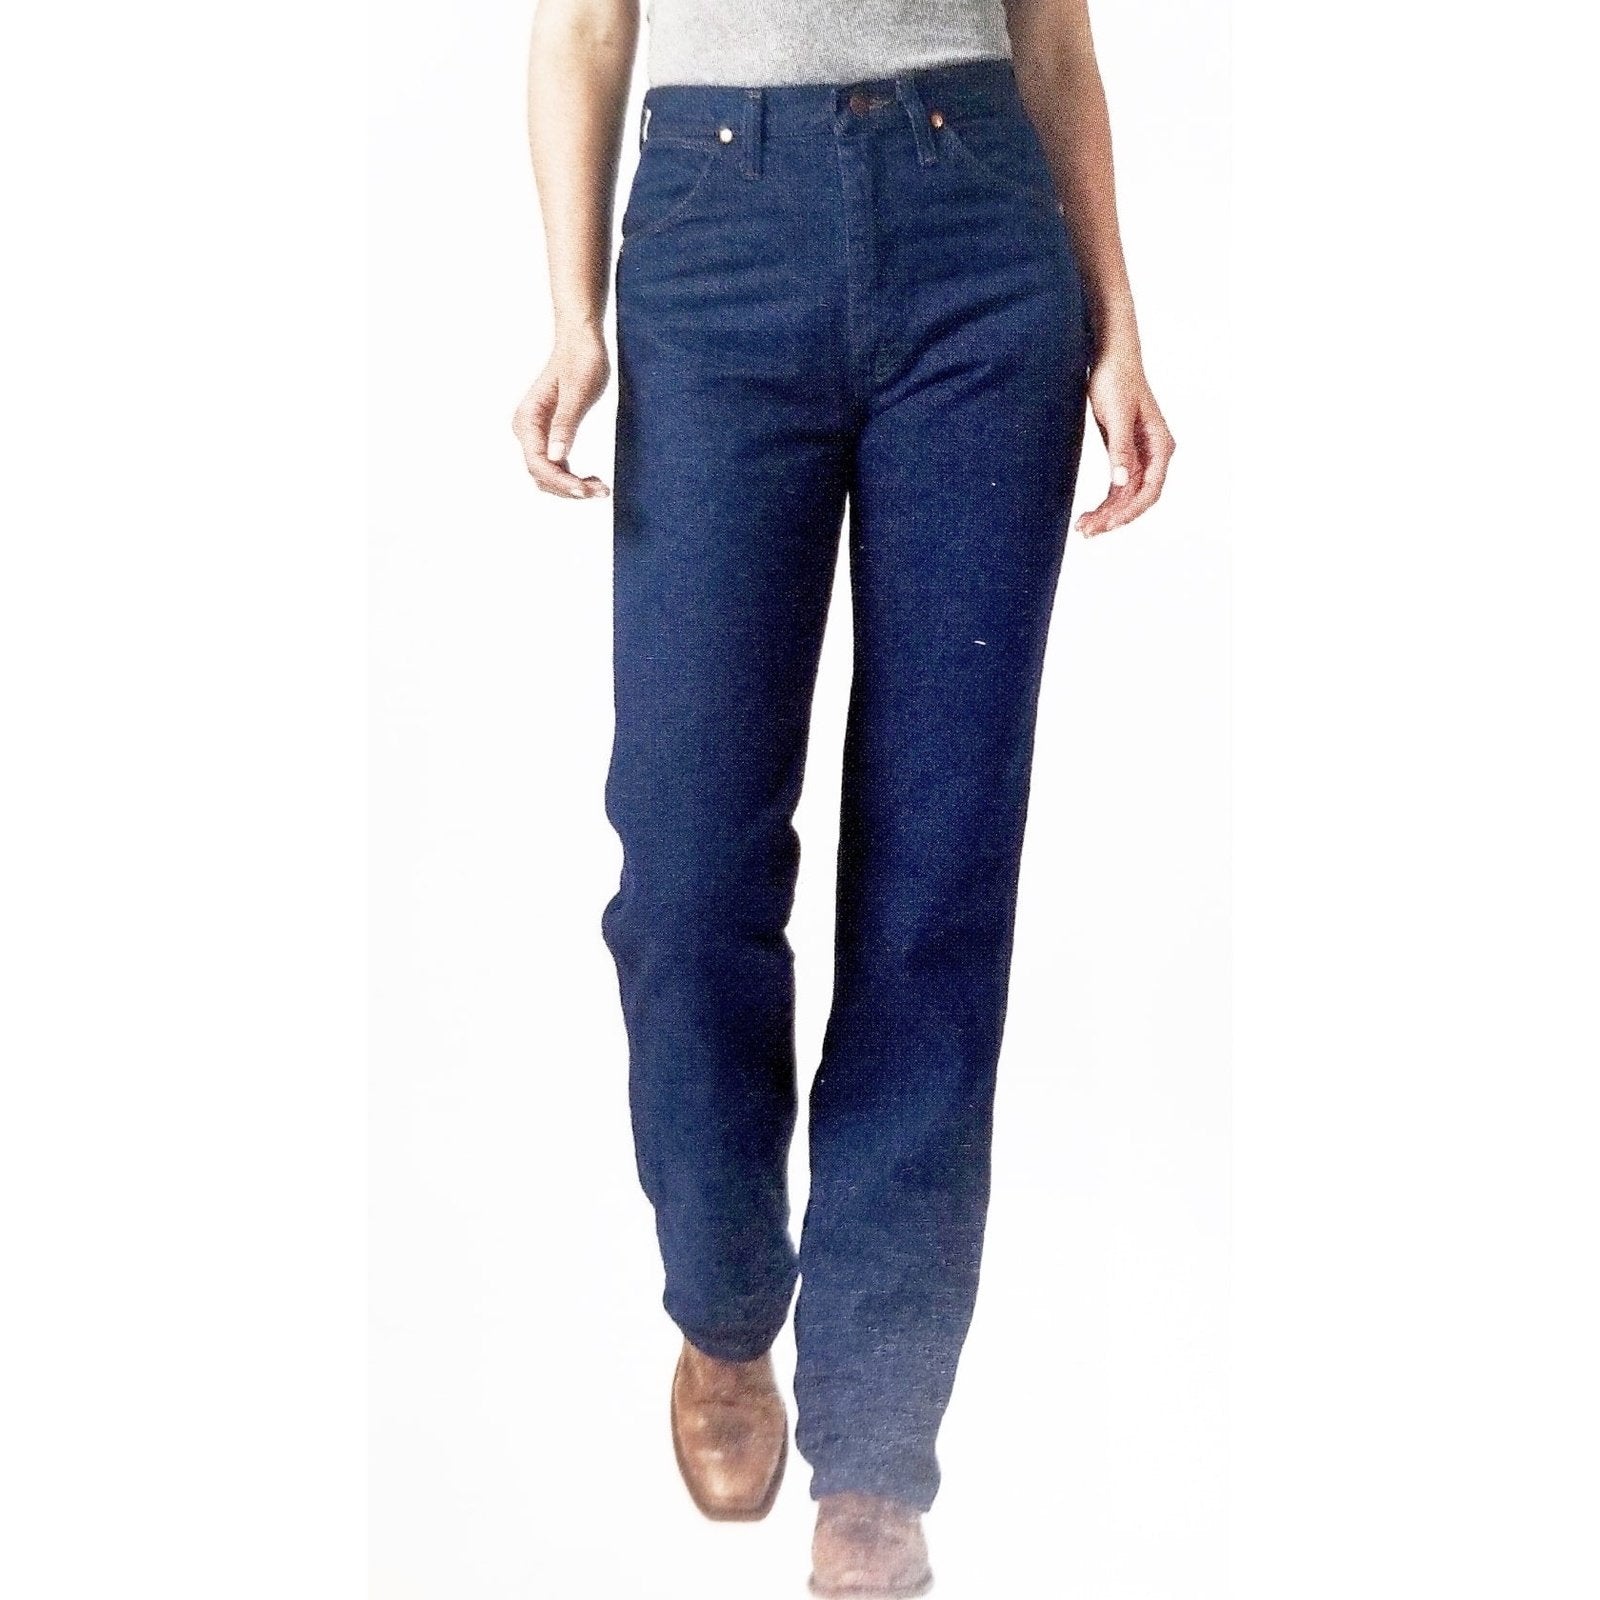 Wrangler Women's Jeans Slim Fit Pre-Wash14MWZ Ged Heavy Denim